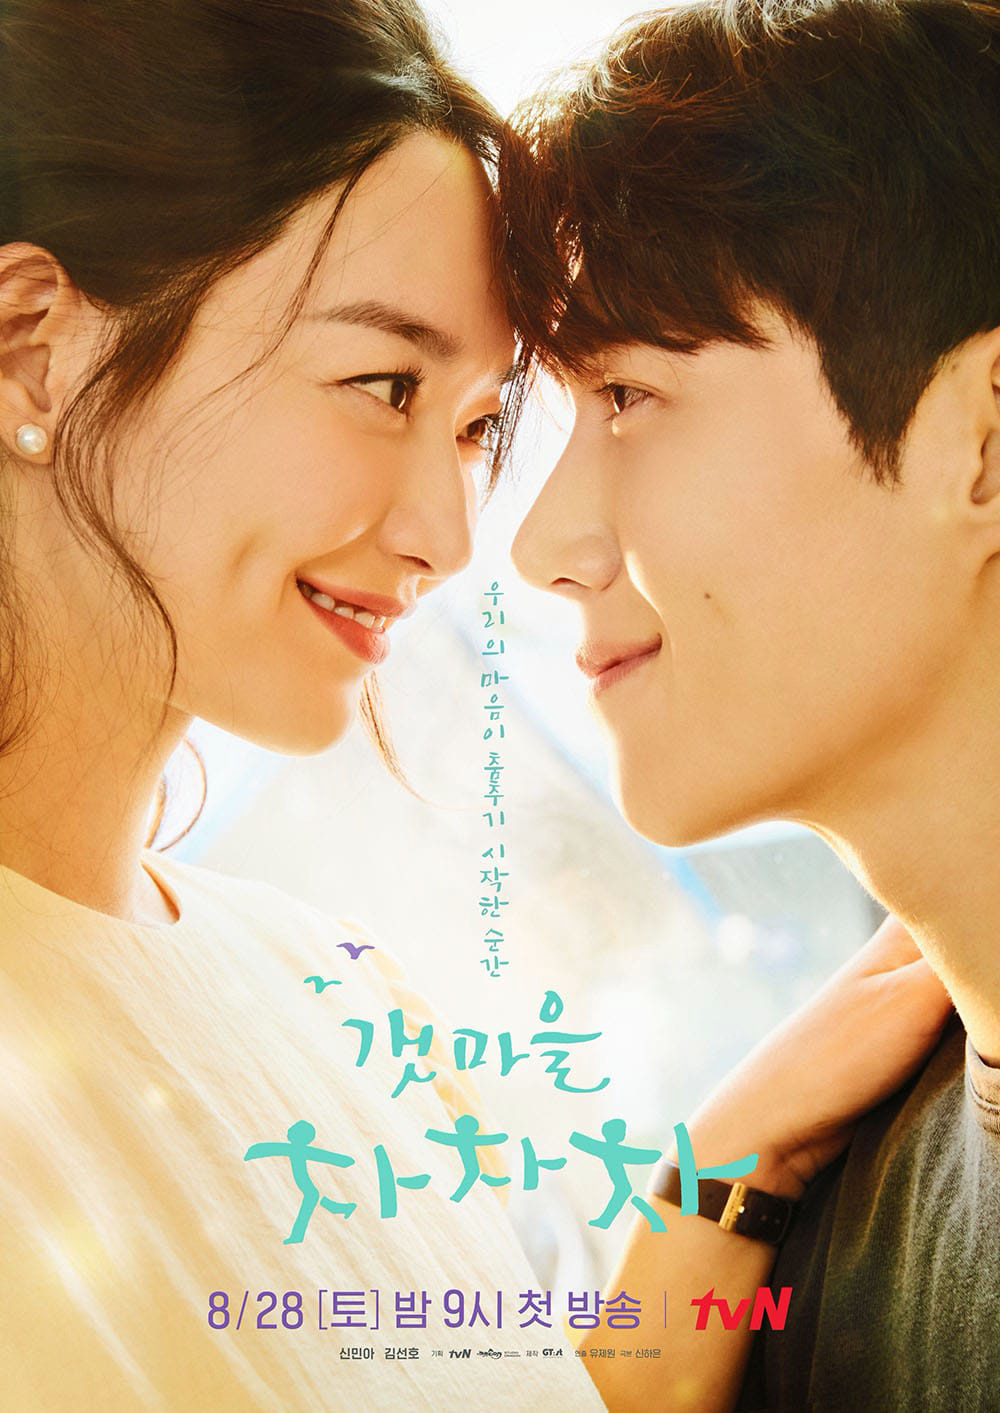 Phim Hàn có mỗi kiểu poster mà xài lại hoài: Từ IU, Song Hye Kyo đến Jisoo (BLACKPINK), chị nào cũng phải tạo dáng này? - Ảnh 3.